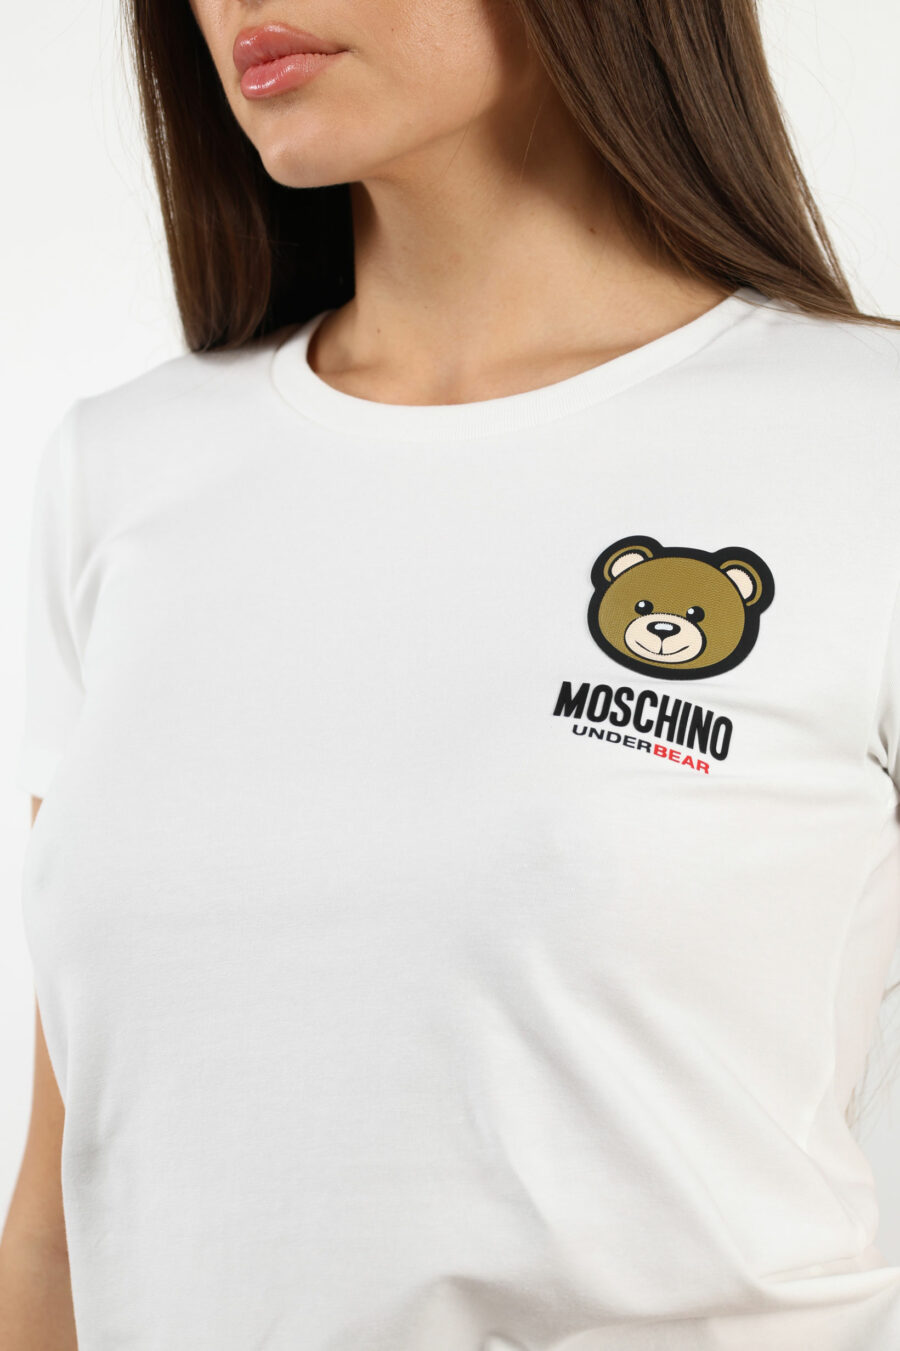 Camiseta blanca con logo oso "underbear" parche - 109810